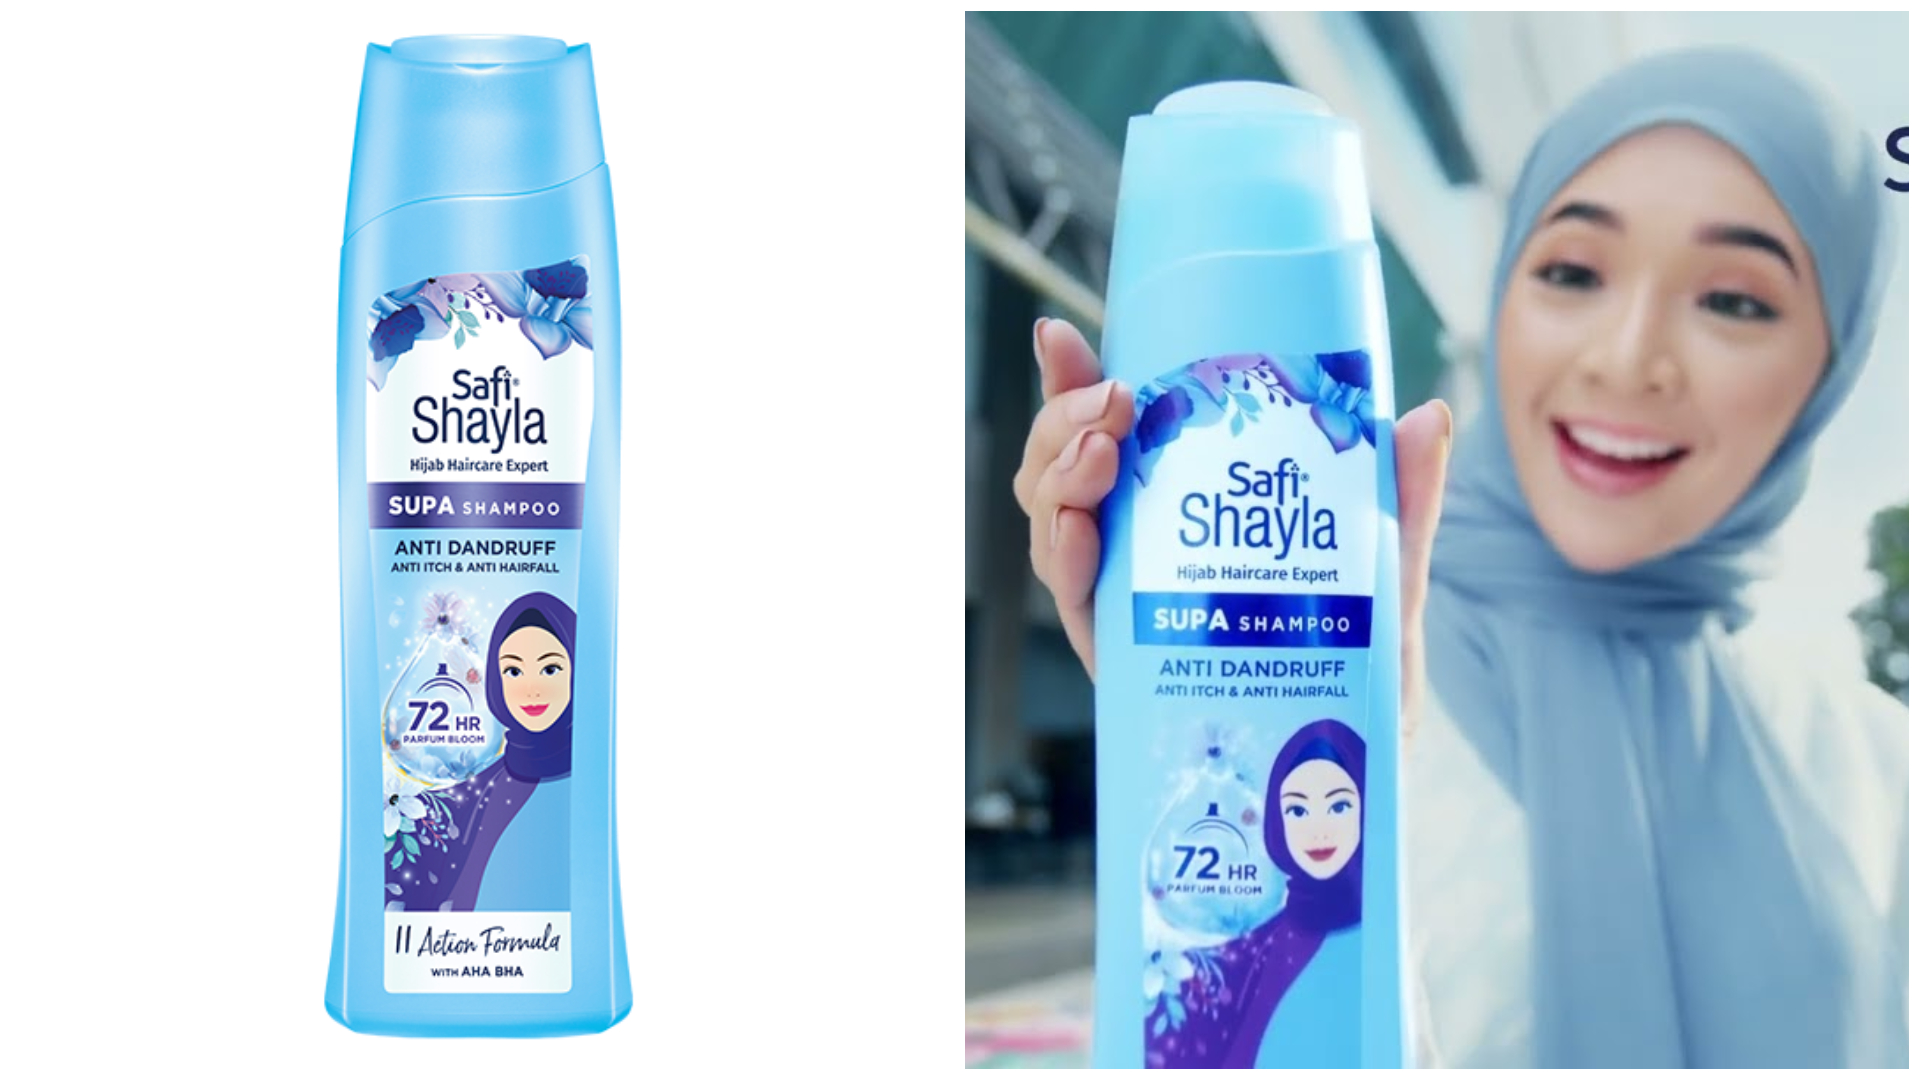 SAFI Shayla Supa Anti Dandruff, Anti Itch & Anti Hairfall Shampoo